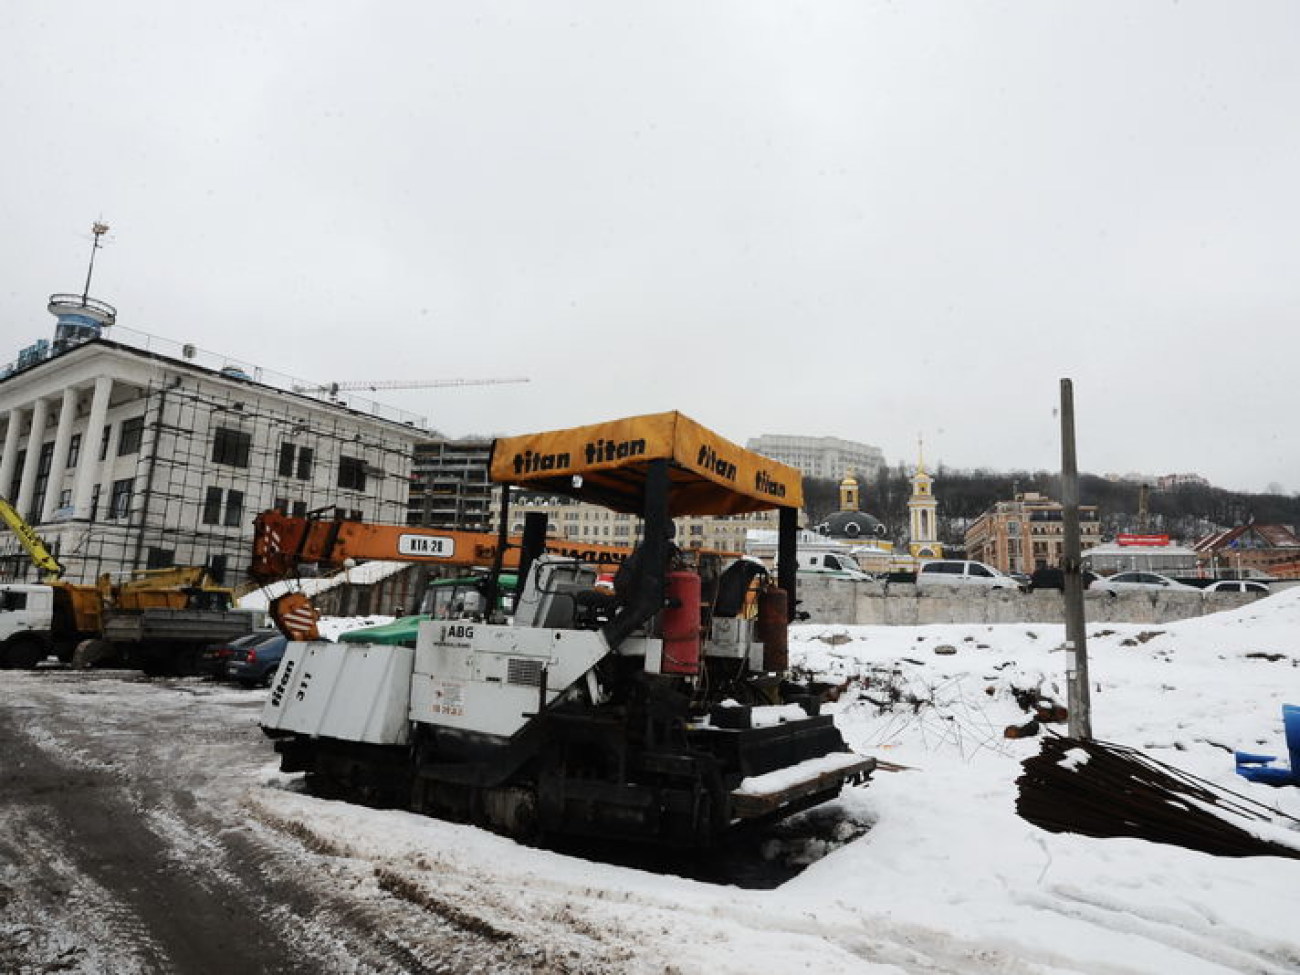 Реконструкция Почтовой площади погубила деревья на набережной